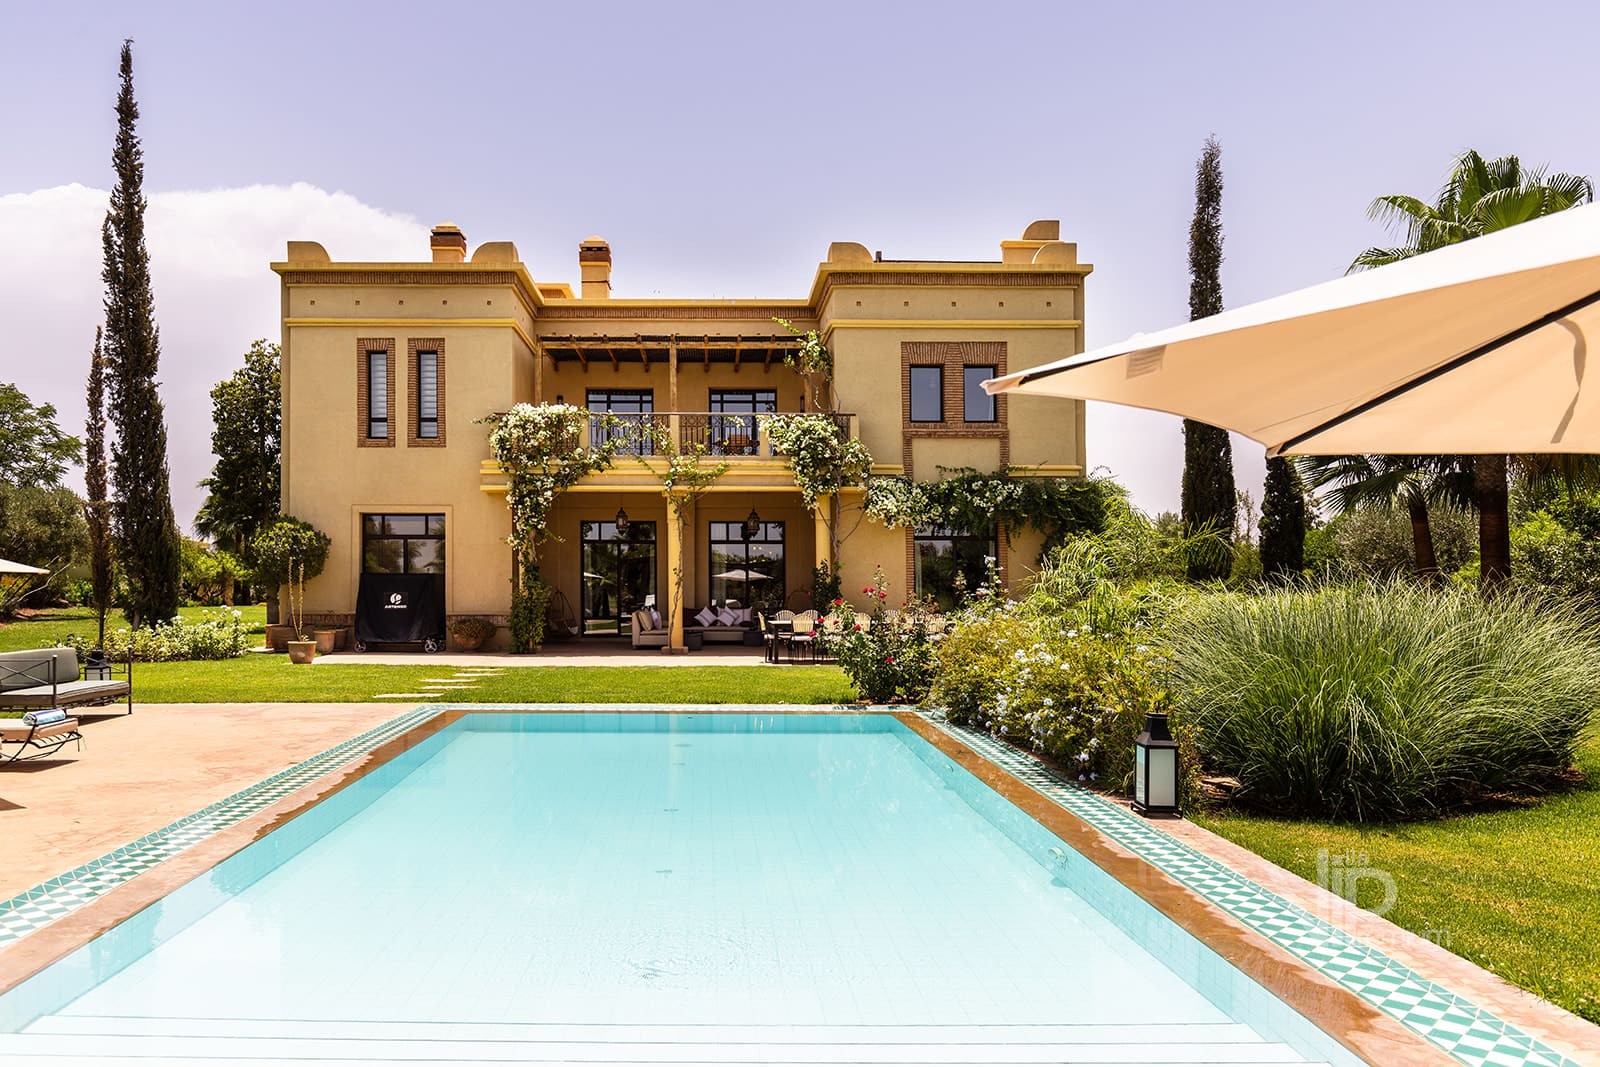 Location Villa Simonah Marrakech